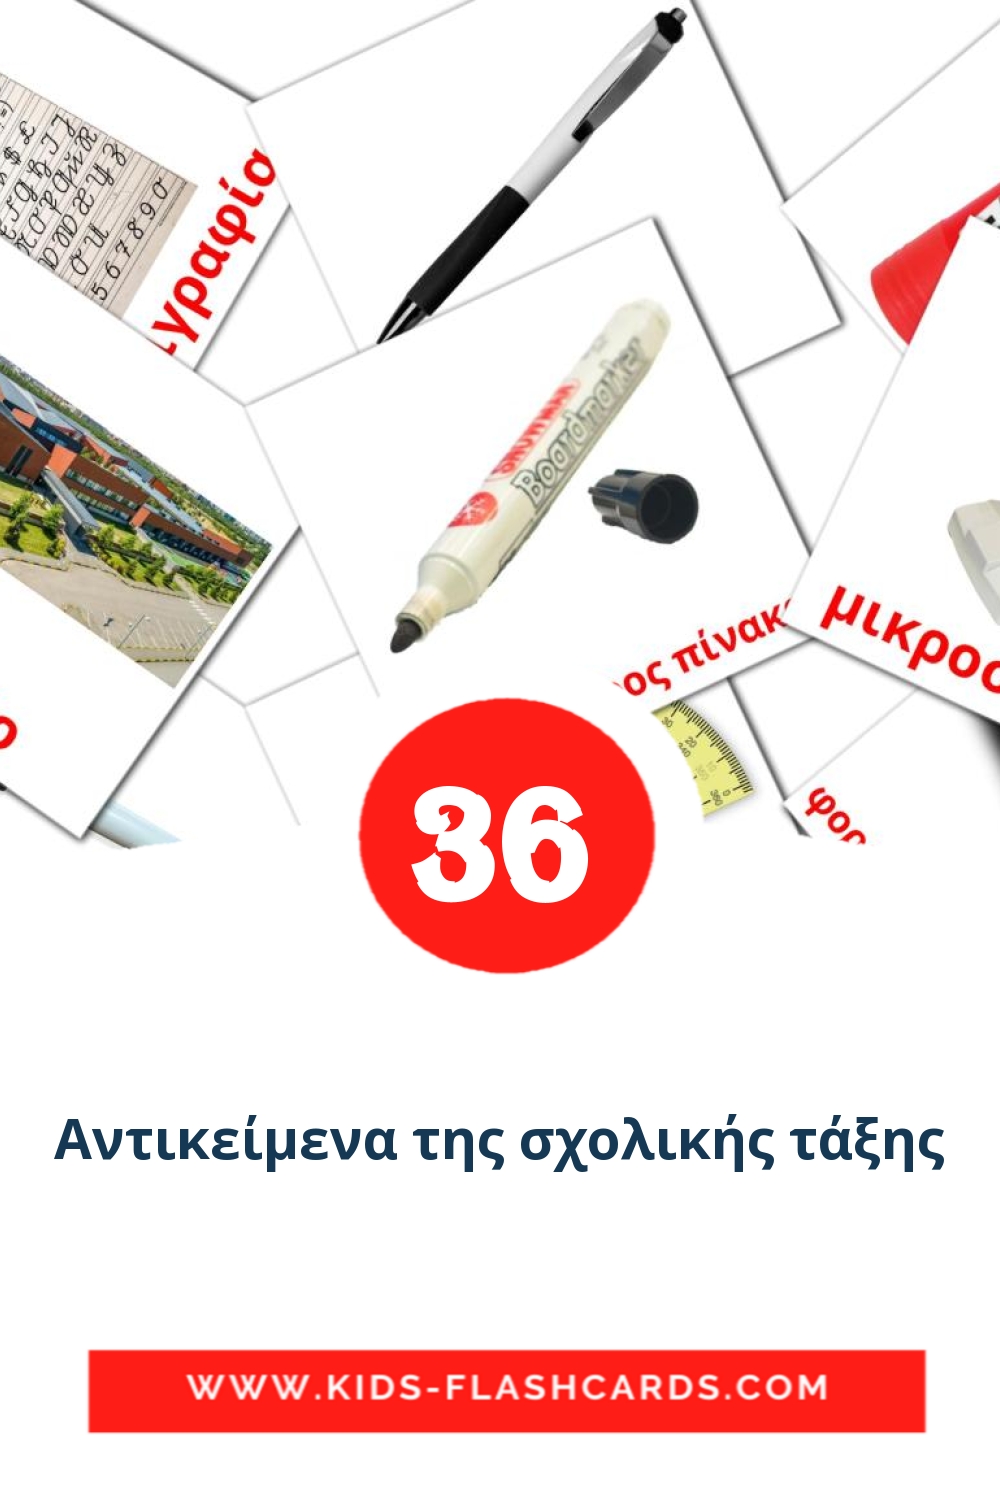 36 Cartões com Imagens de Αντικείμενα της σχολικής τάξης para Jardim de Infância em grego